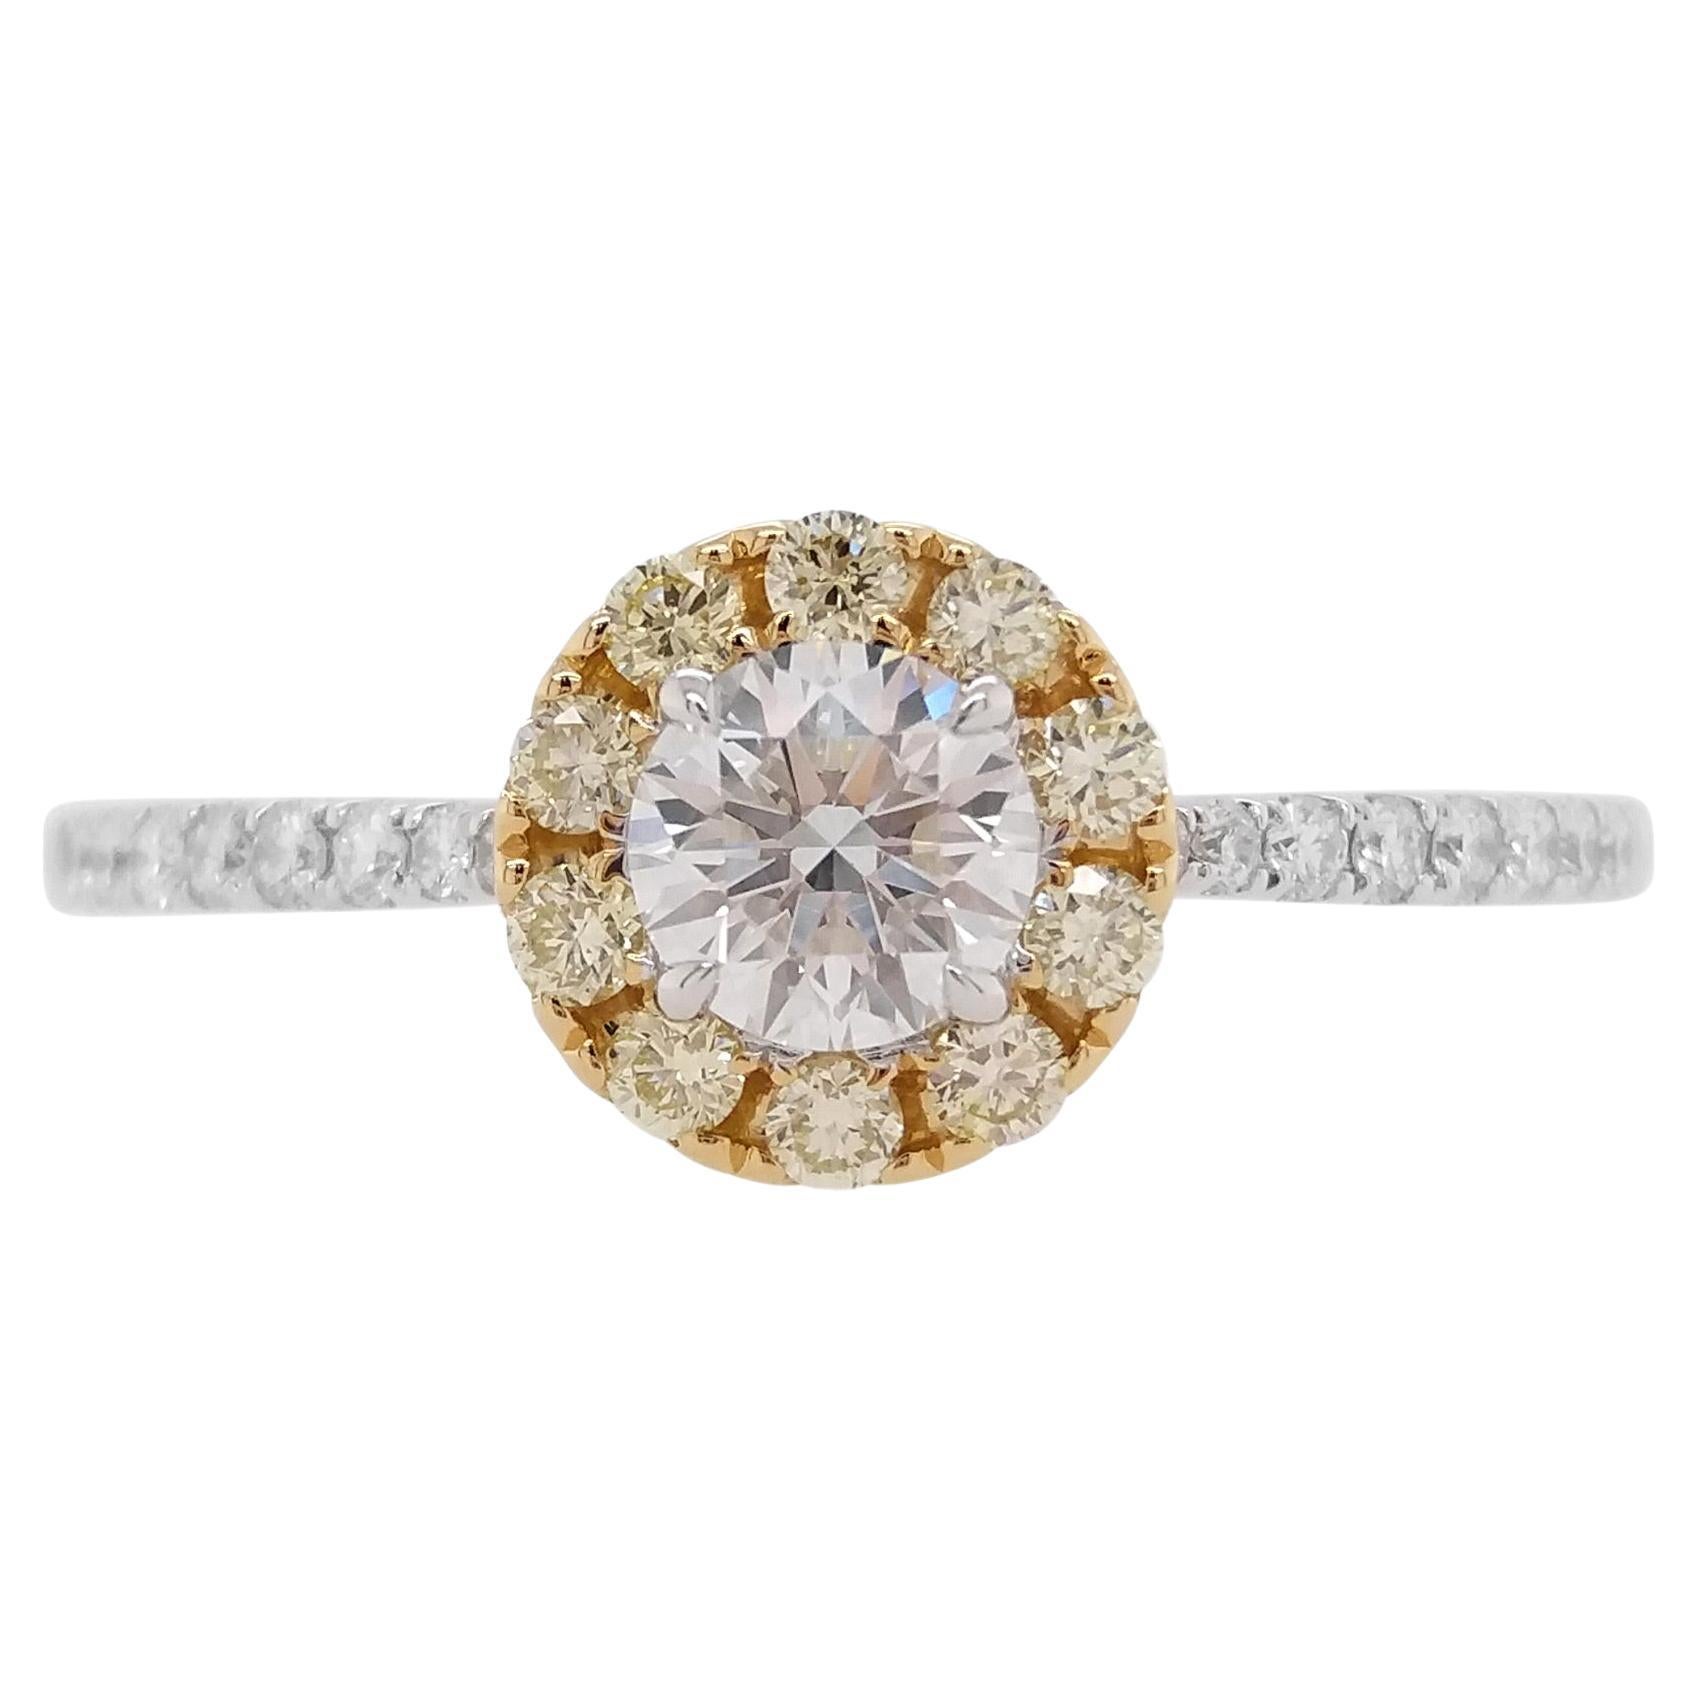 Verlobungsring mit GIA-zertifiziertem weißem Diamanten und gelbem Diamanten aus 18 Karat Gold